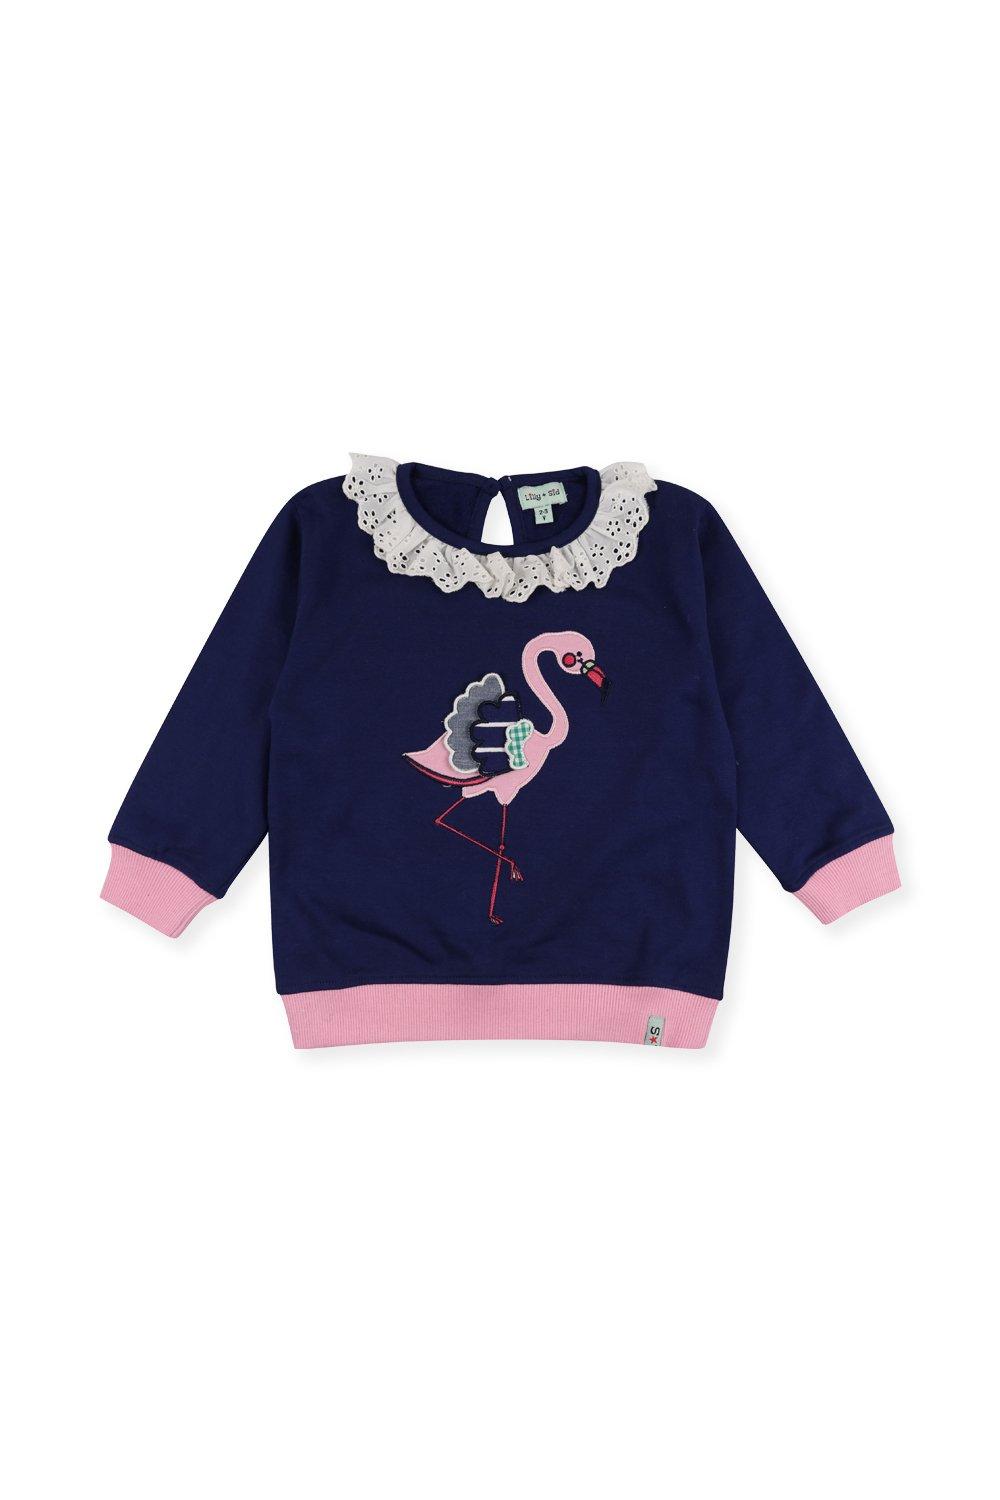 Applique Flamingo Sweatshirt